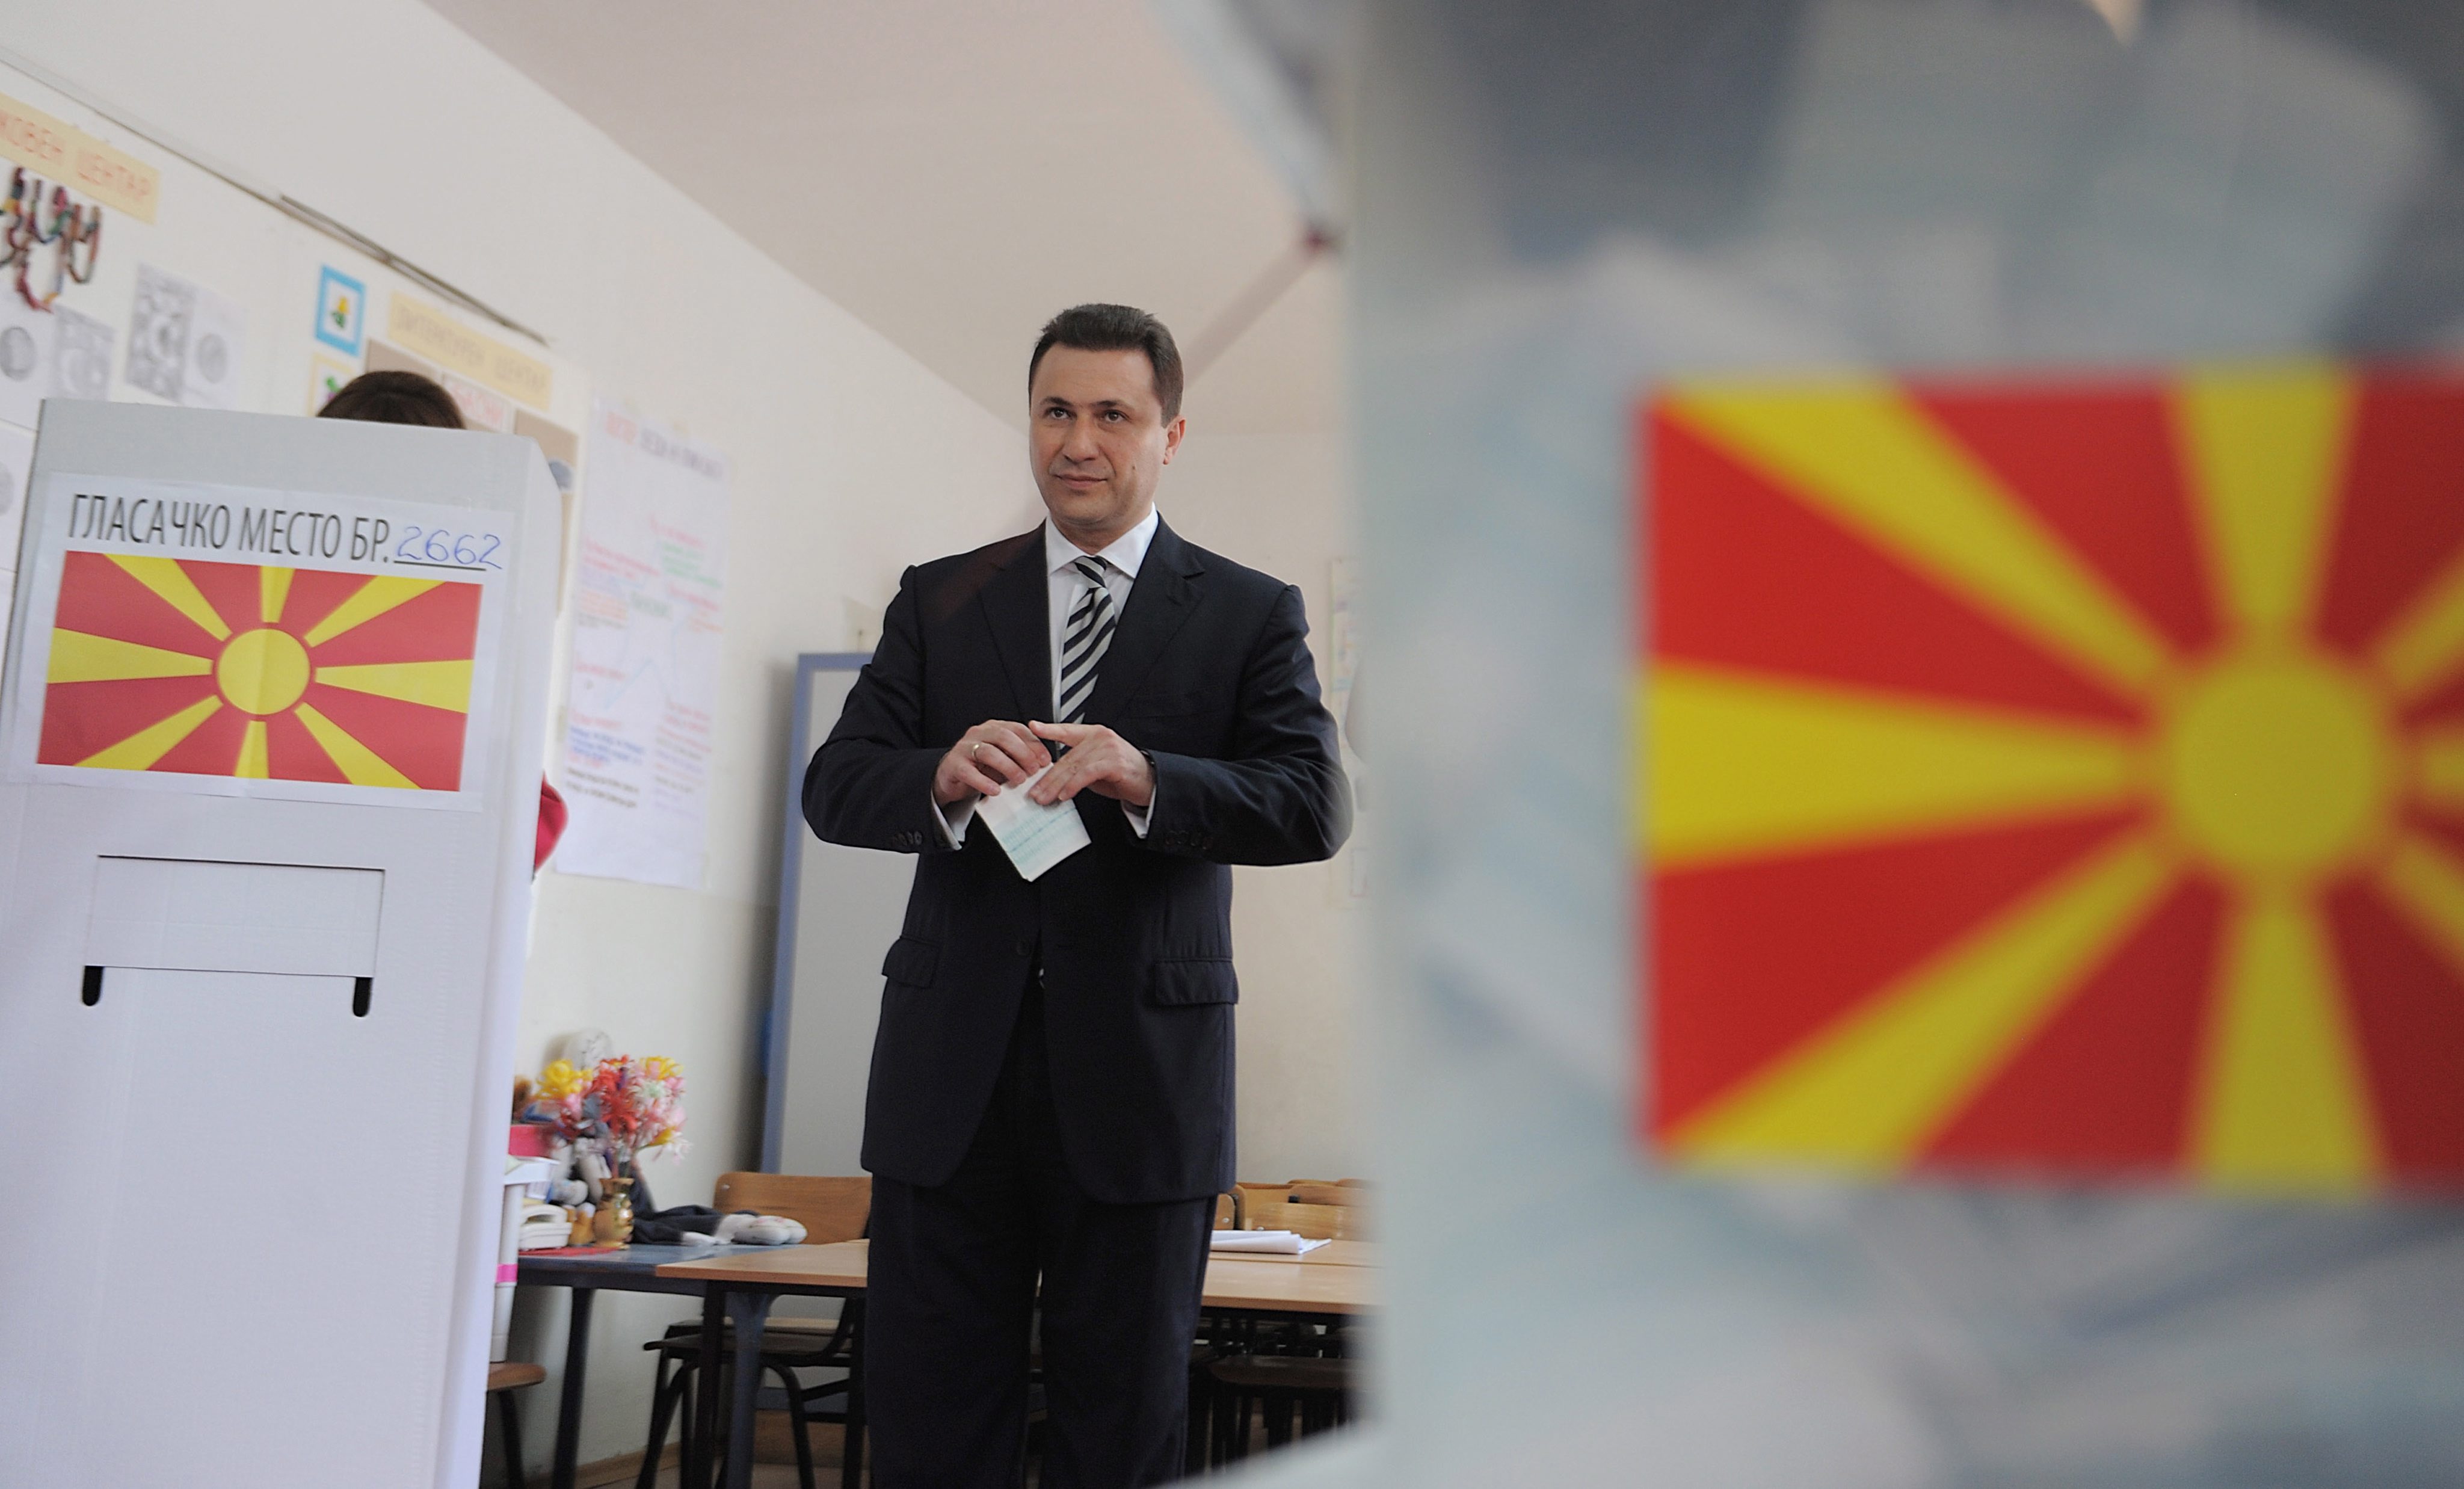 ΠΓΔΜ: Υπουργοί επικρίνουν τον Γκρουέφσκι για σπατάλη δημοσίου χρήματος